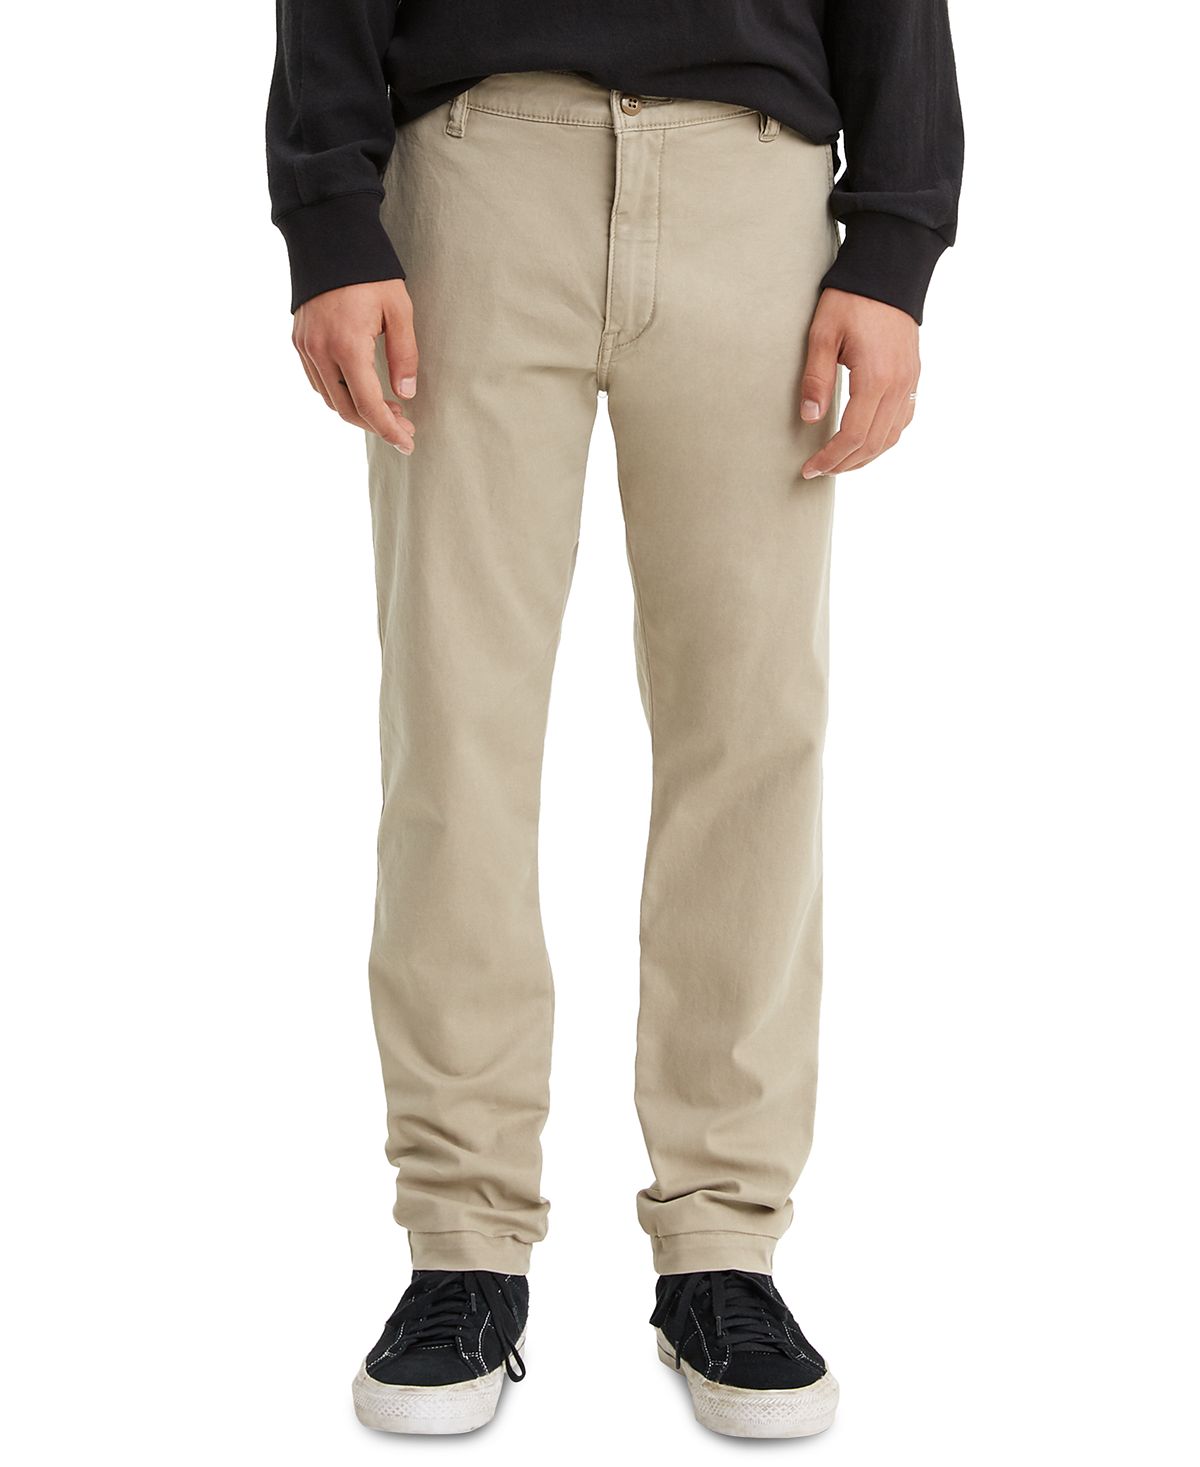 Мужские эластичные брюки xx chino standard с зауженным кроем Levi's, мульти школьные брюки чинос oshkosh повседневный стиль карманы размер 6 синий